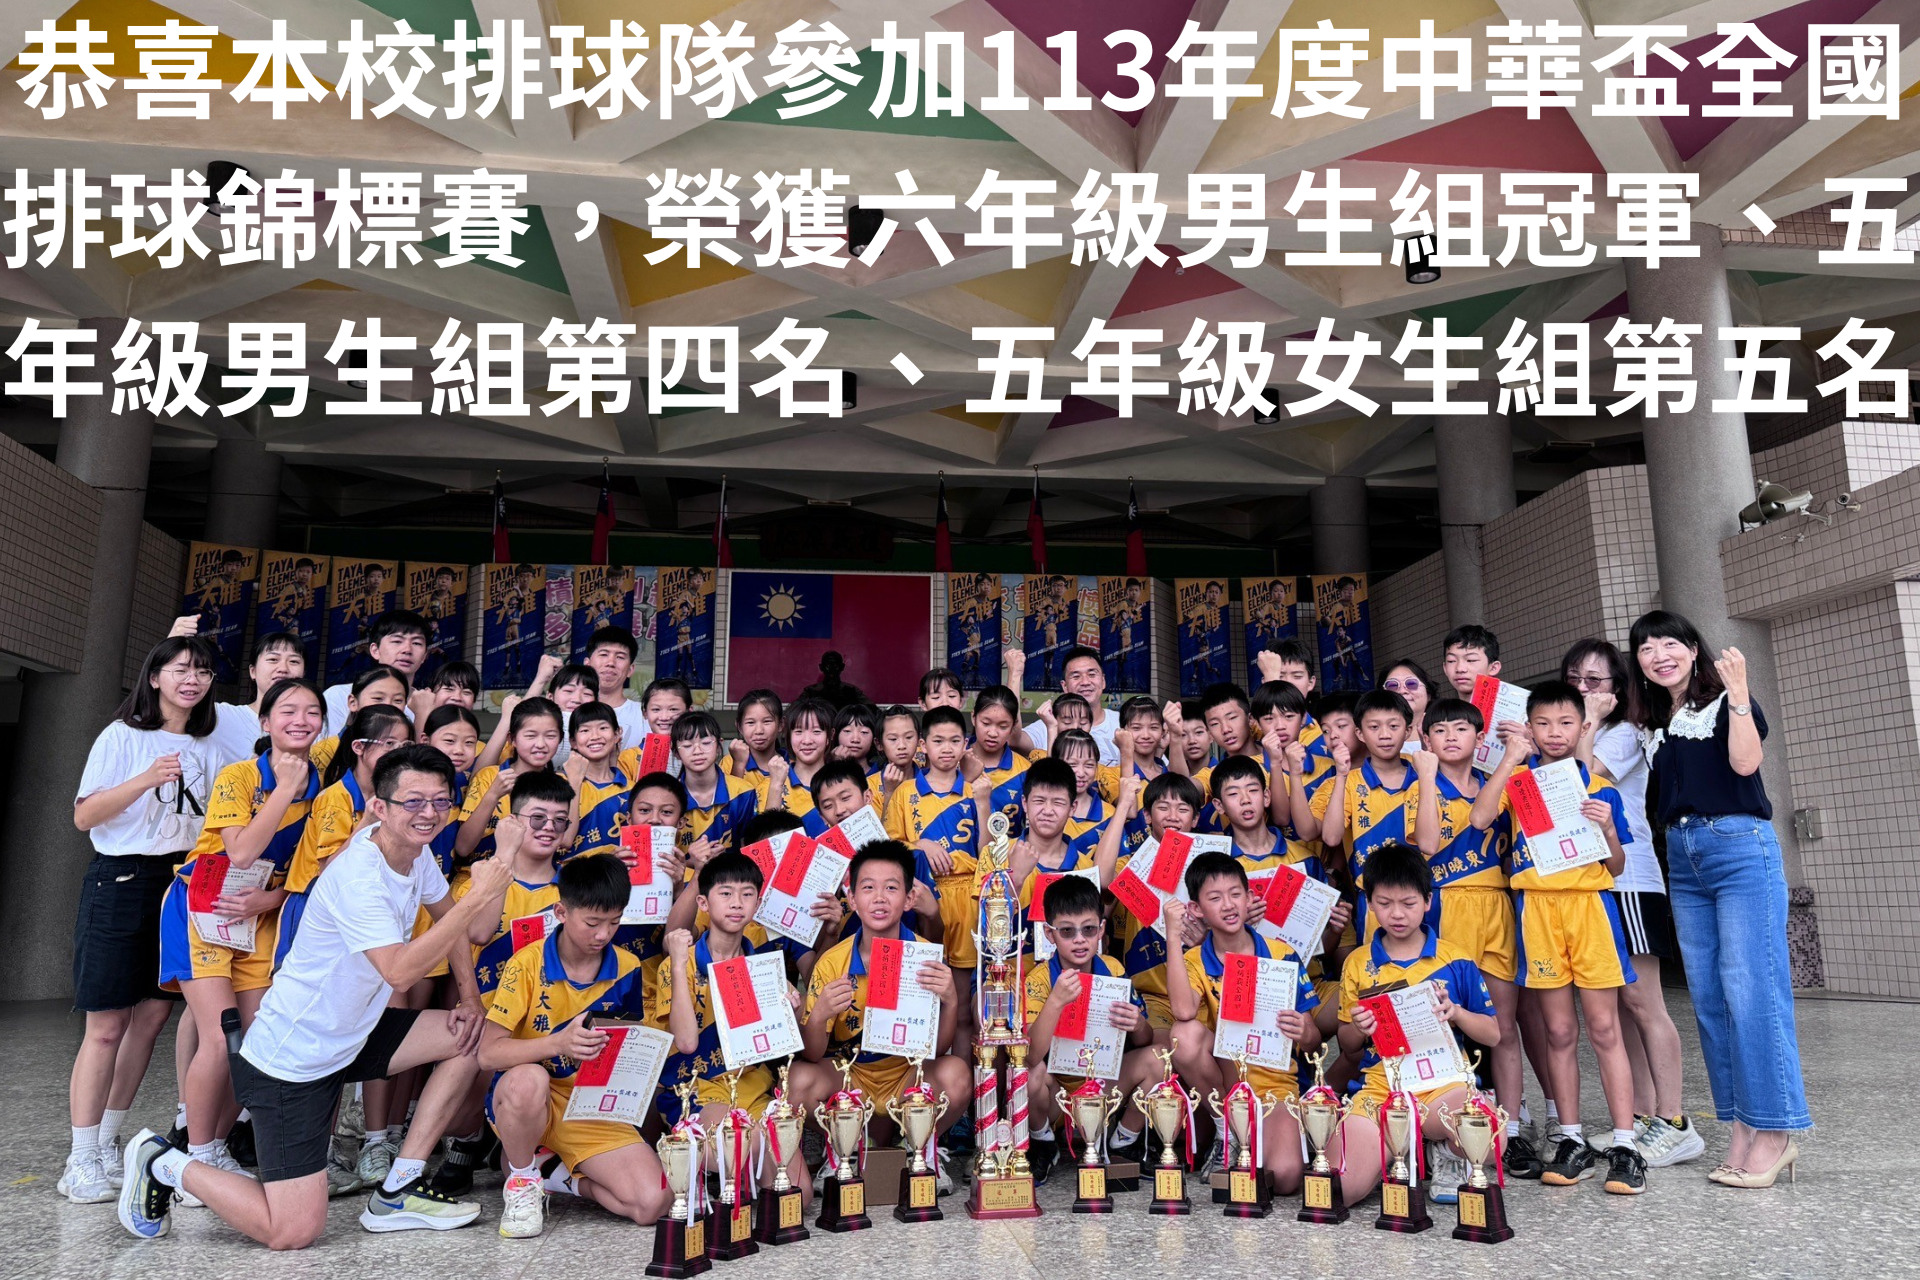 本校排球隊參加中華盃排球賽榮獲佳績